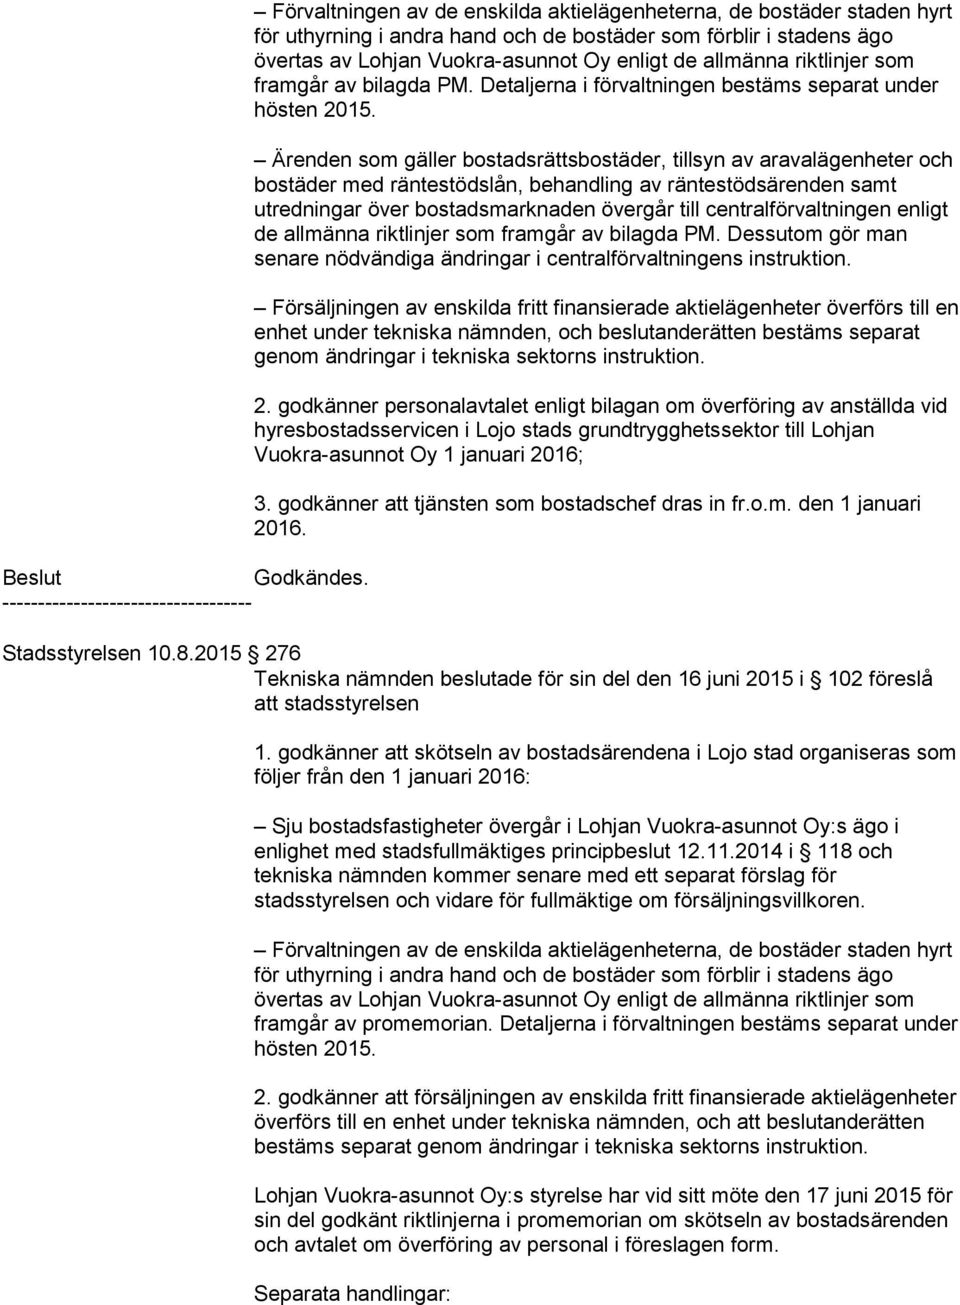 godkänner personalavtalet enligt bilagan om överföring av anställda vid hyresbostadsservicen i Lojo stads grundtrygghetssektor till Lohjan Vuokra-asunnot Oy 1 januari ; 3.